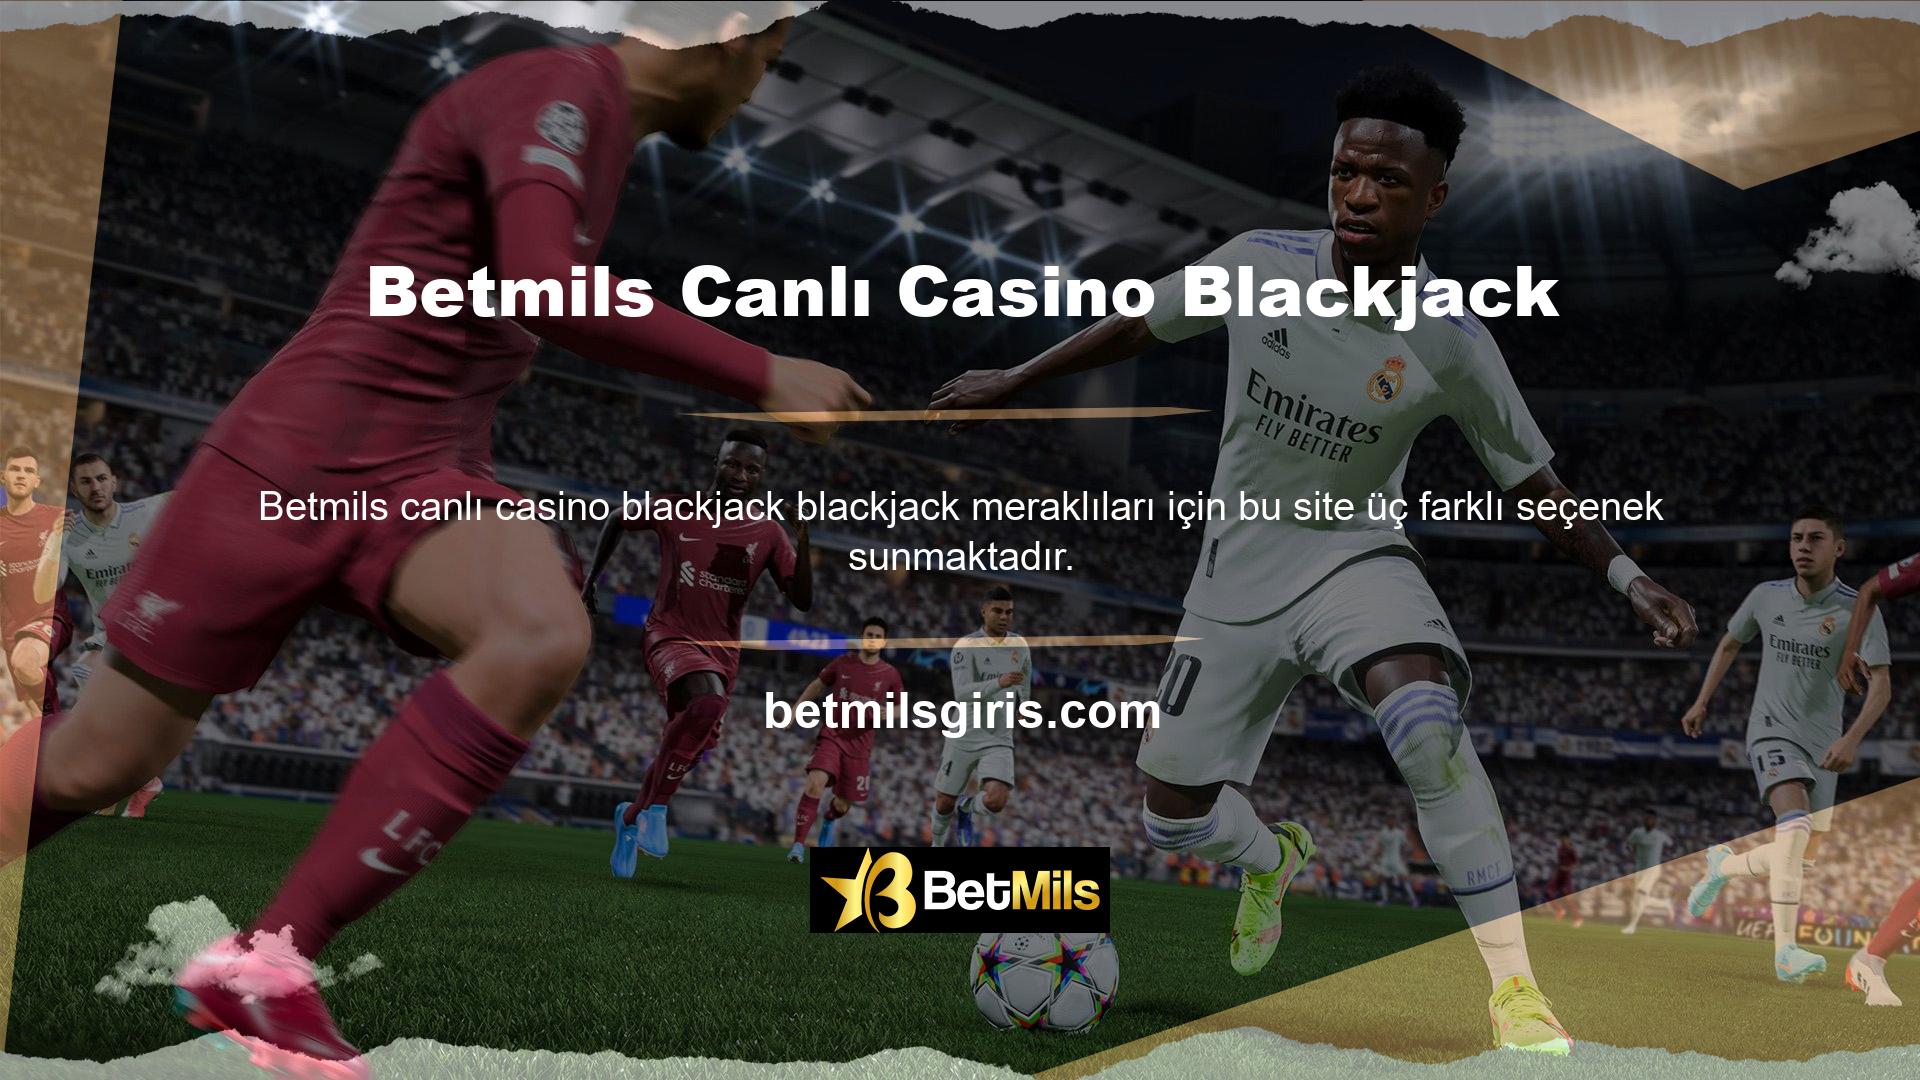 Betmils Canlı Casino Blackjack Canlı Casino Blackjack oyunlarına oyun boyunca canlı bir krupiye eşlik eder